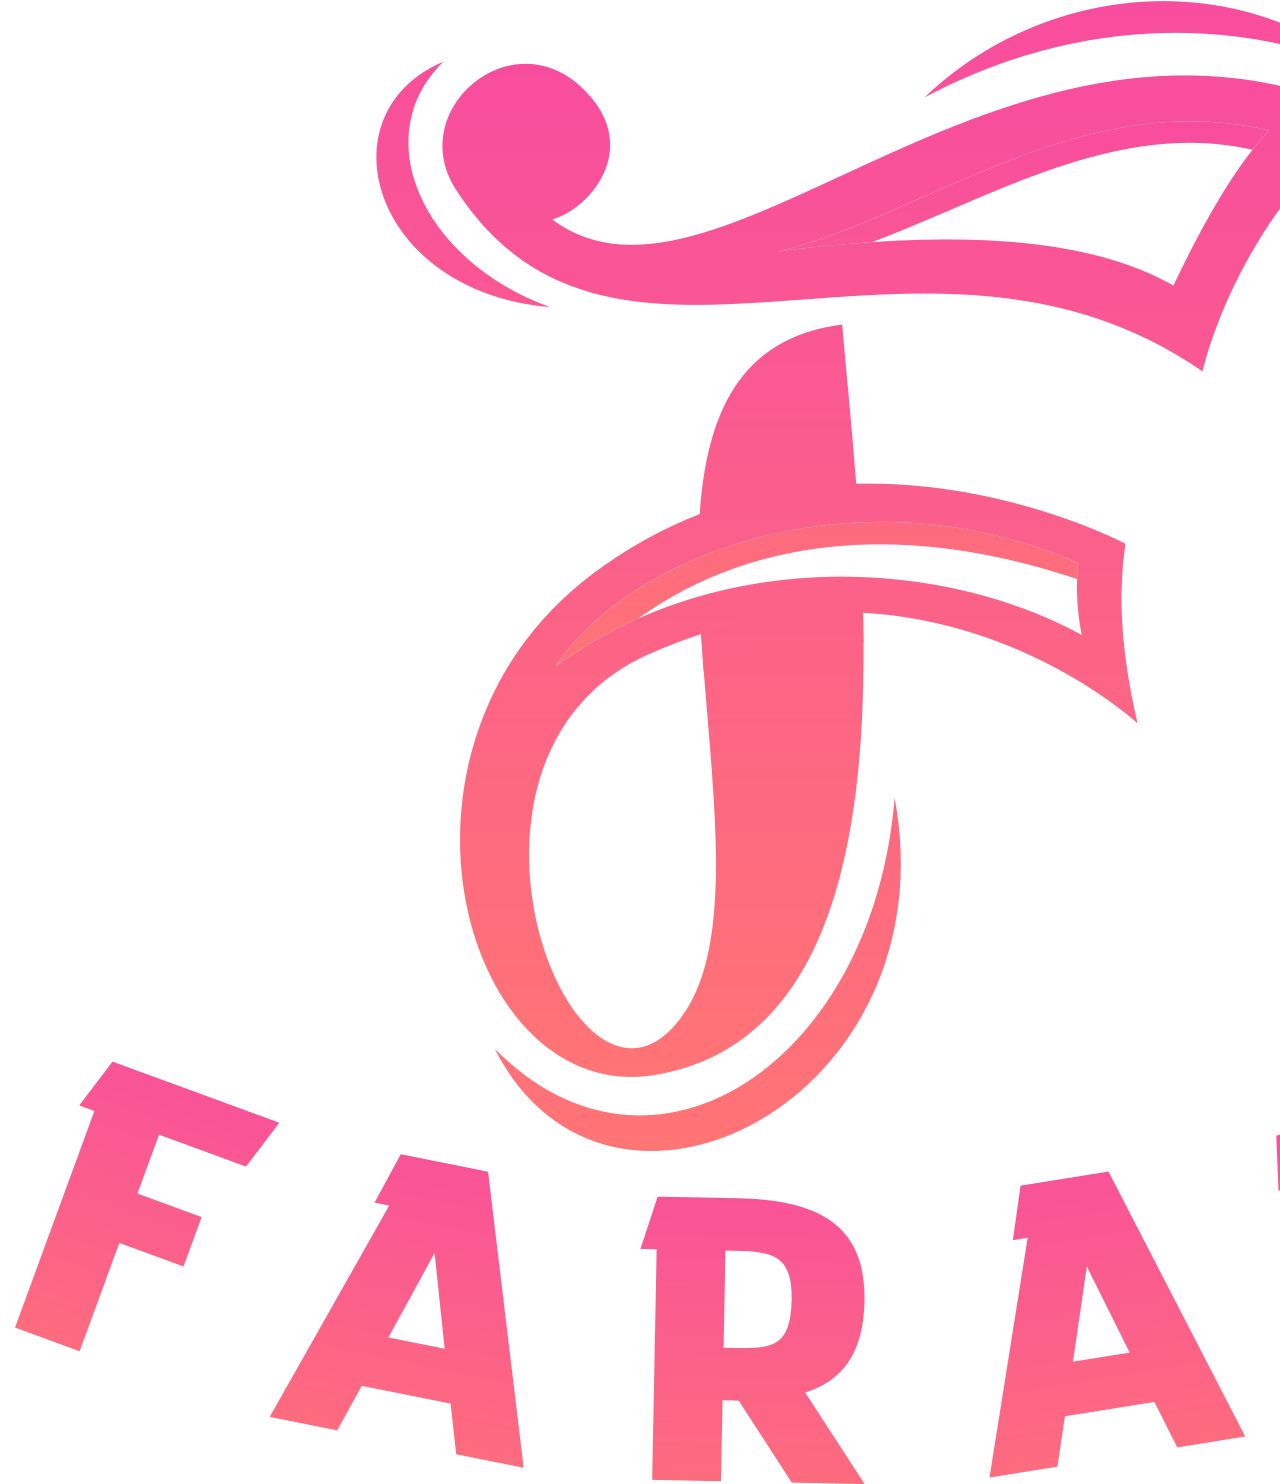 FARAH's logo